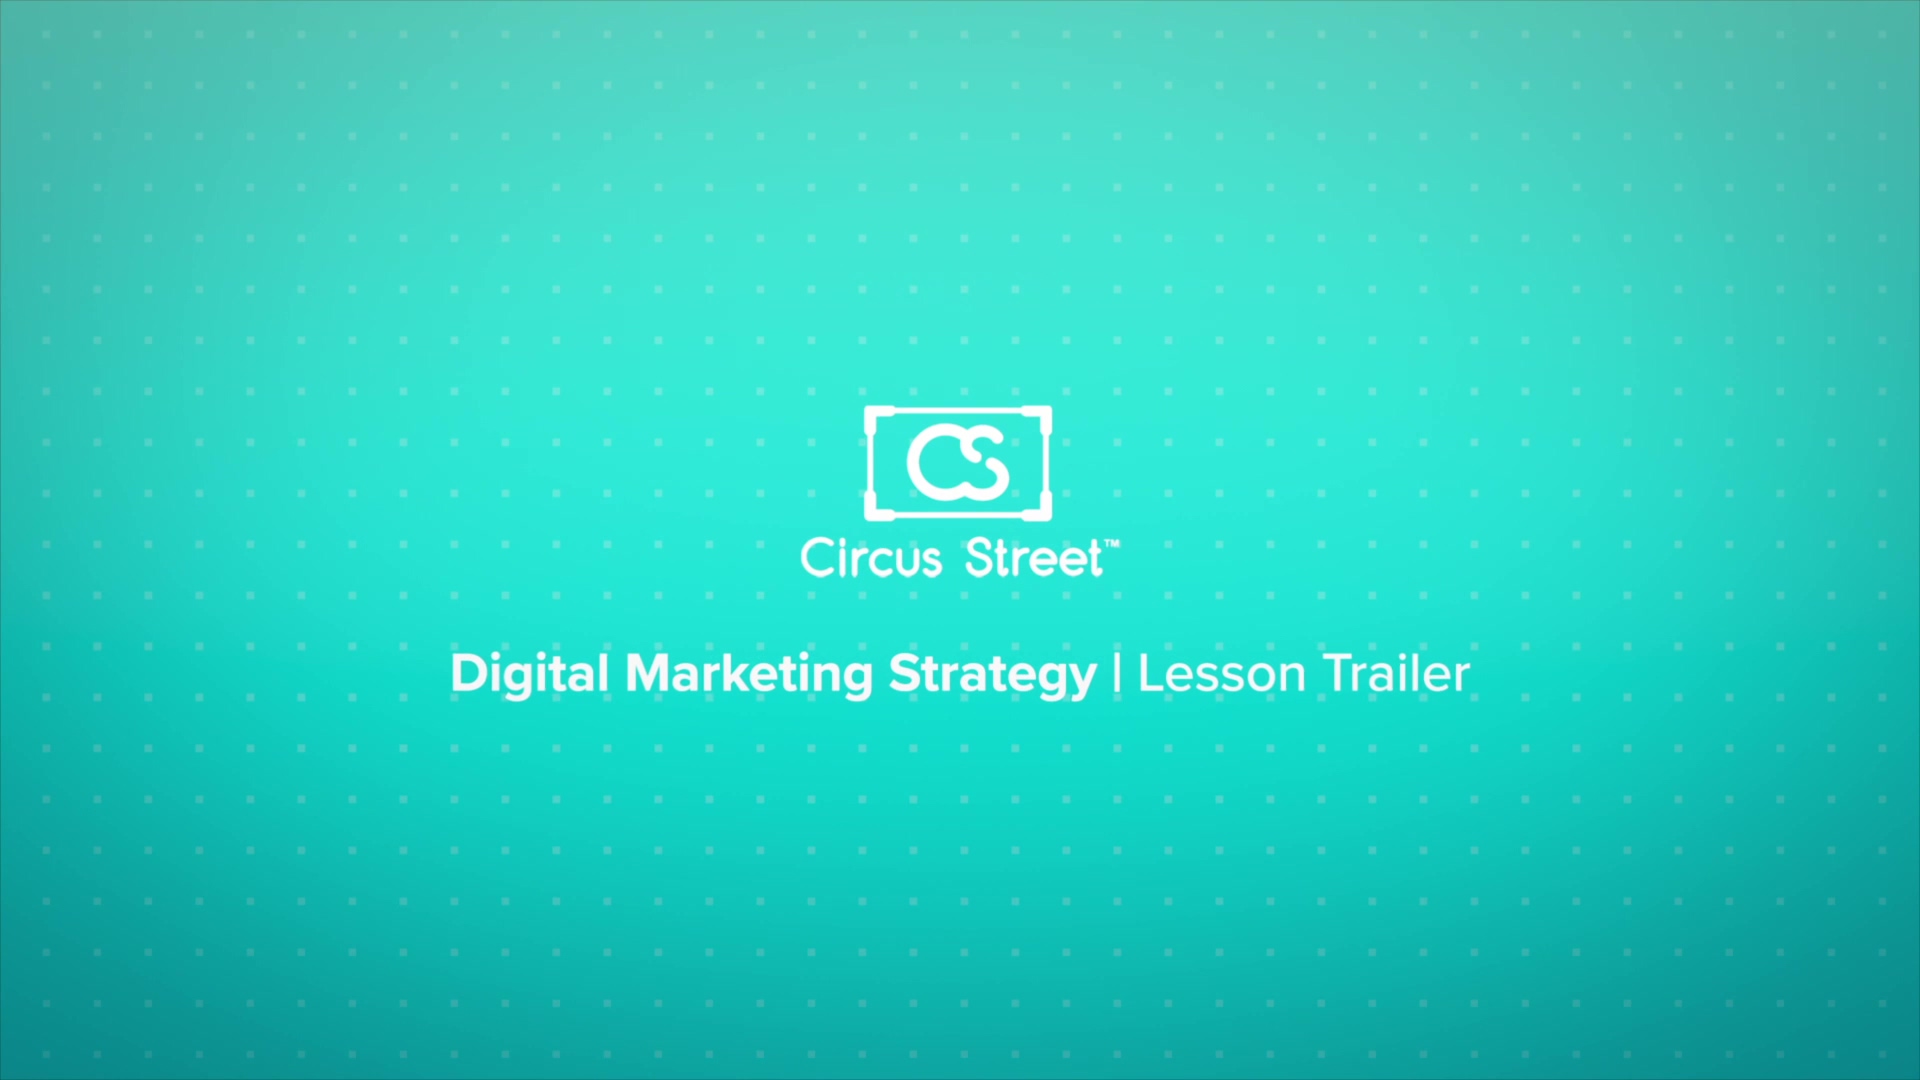 Digital Marketing Strategy Trailer